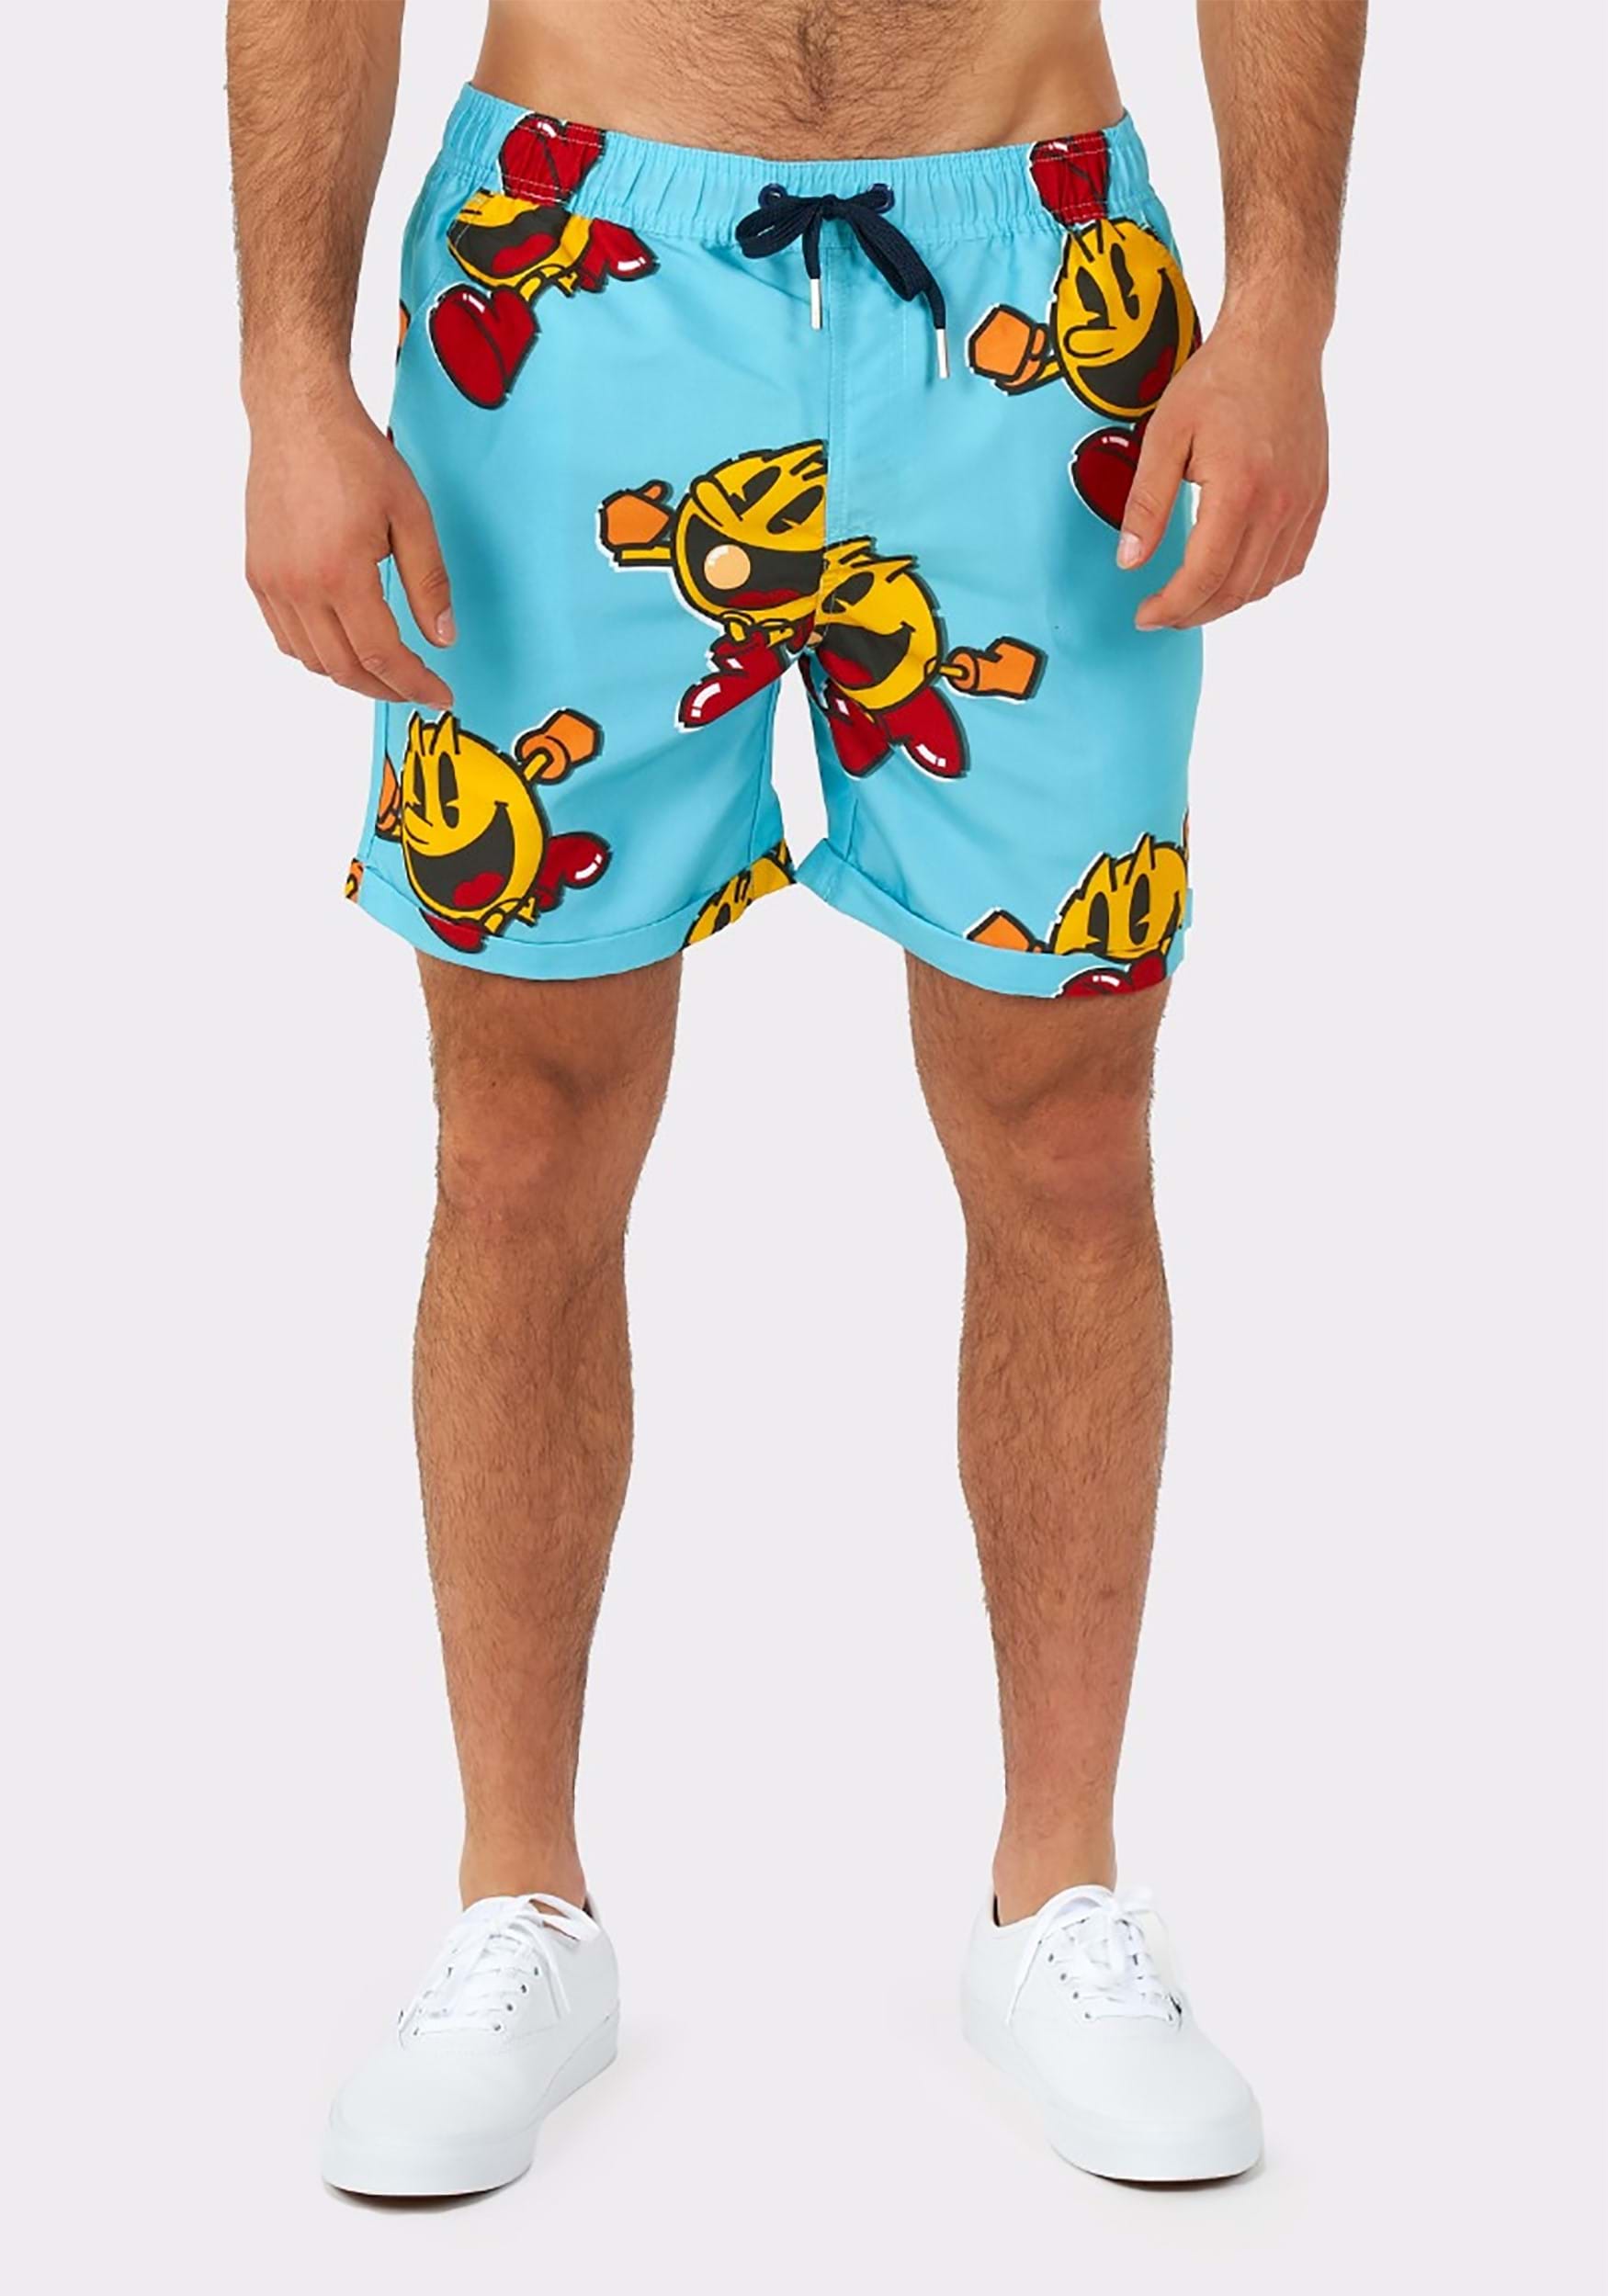 Men's Pac-Man Waka Waka Swimsuit And Shirt